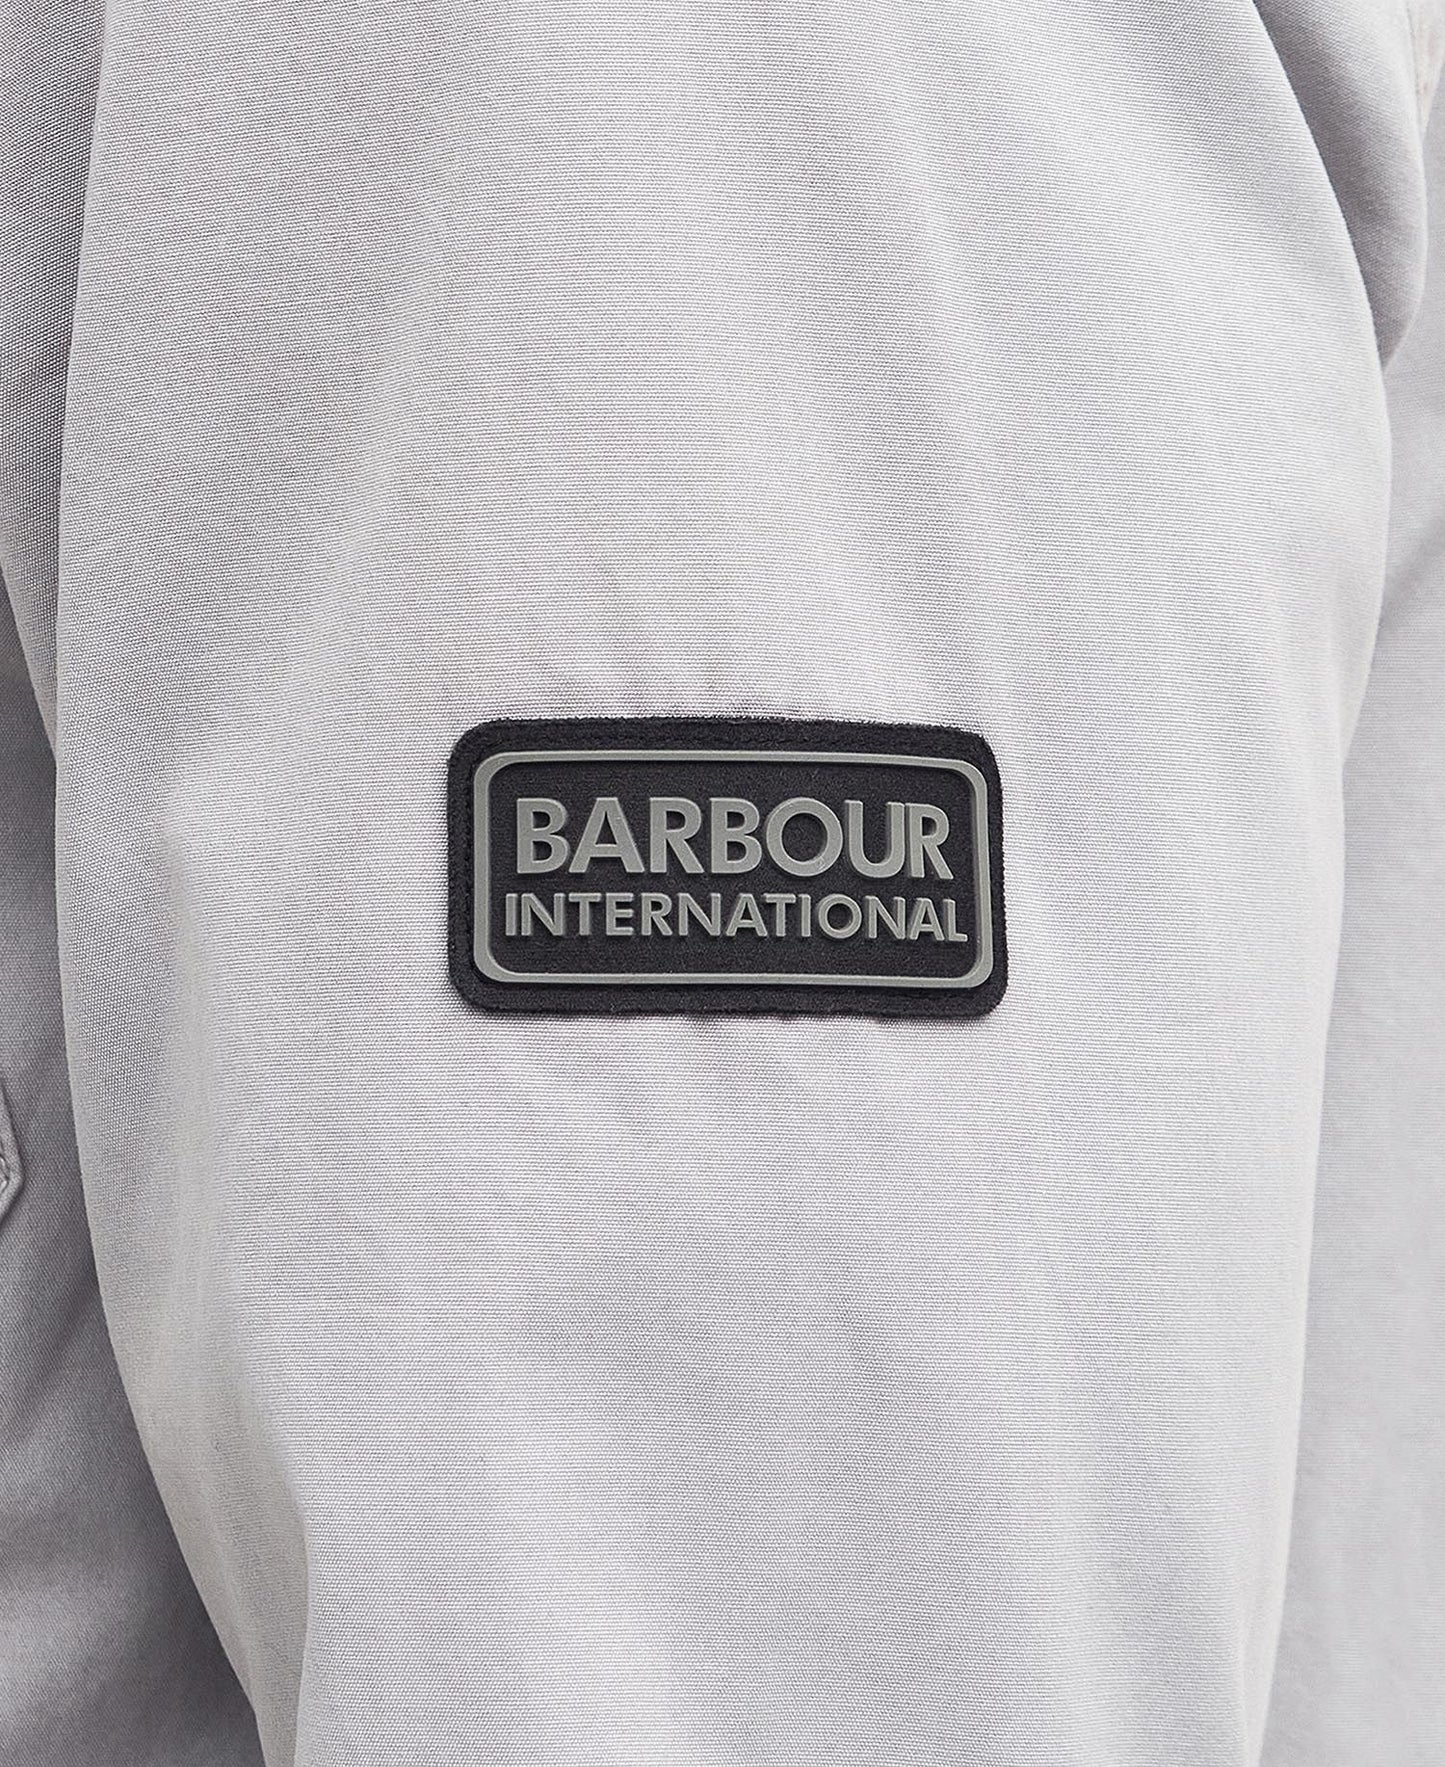 Barbour International Gear Overshirt